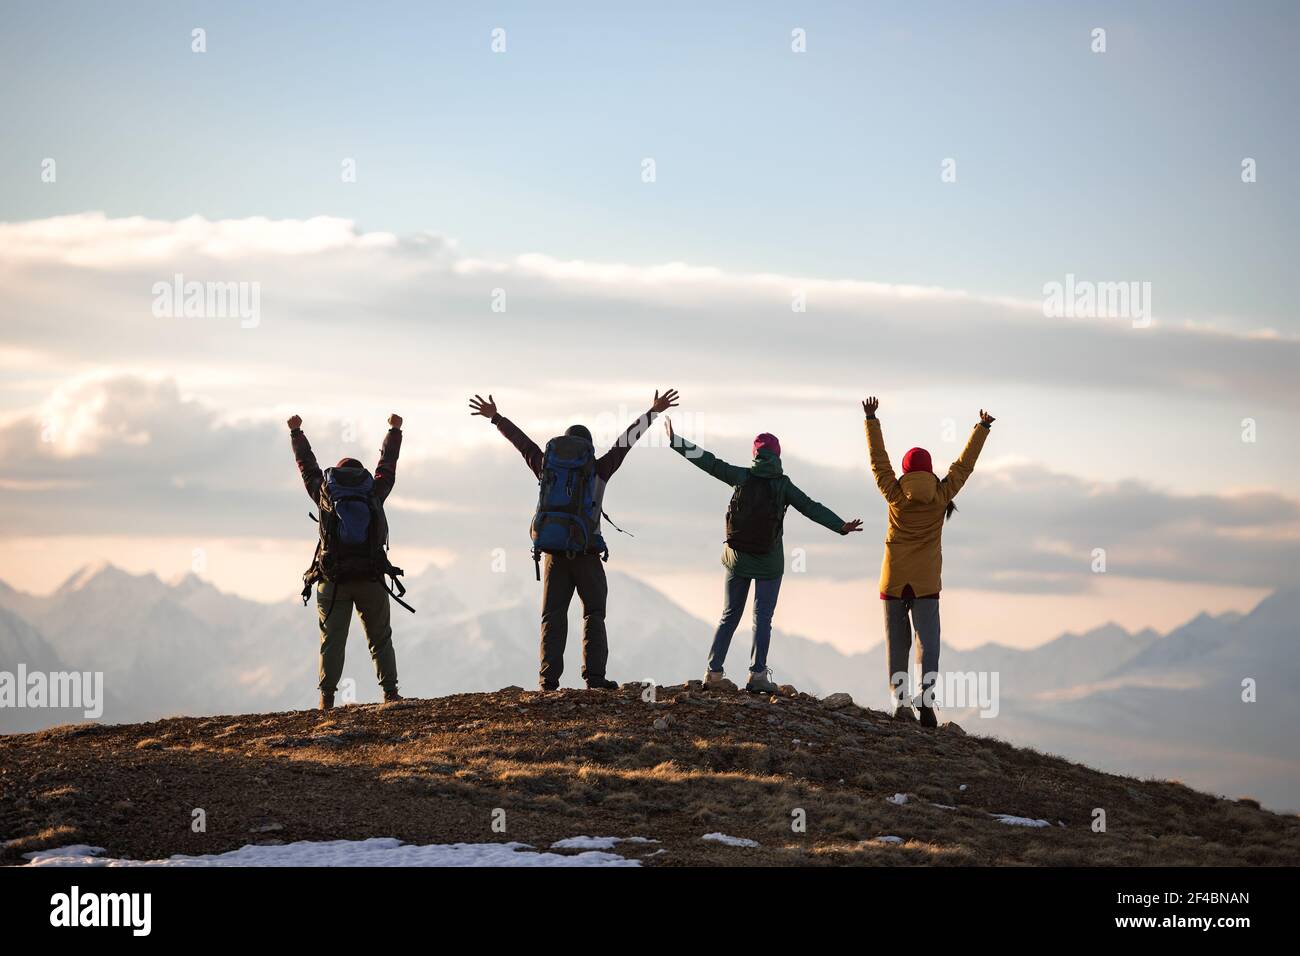 Quatre jeunes touristes sont debout avec des sacs à dos dans les poses de gagnant au sommet de la montagne Banque D'Images